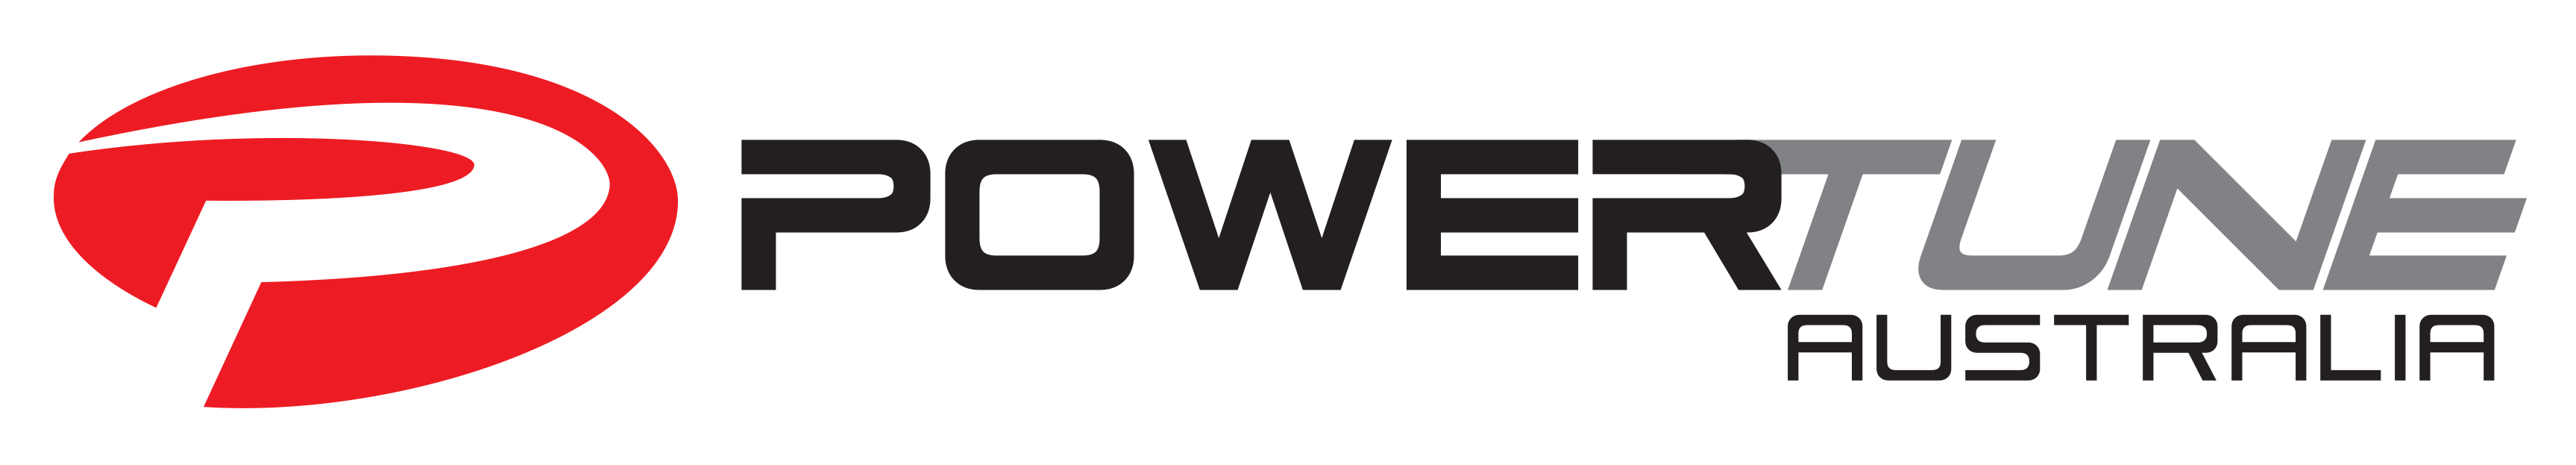 Powertune Australia logo